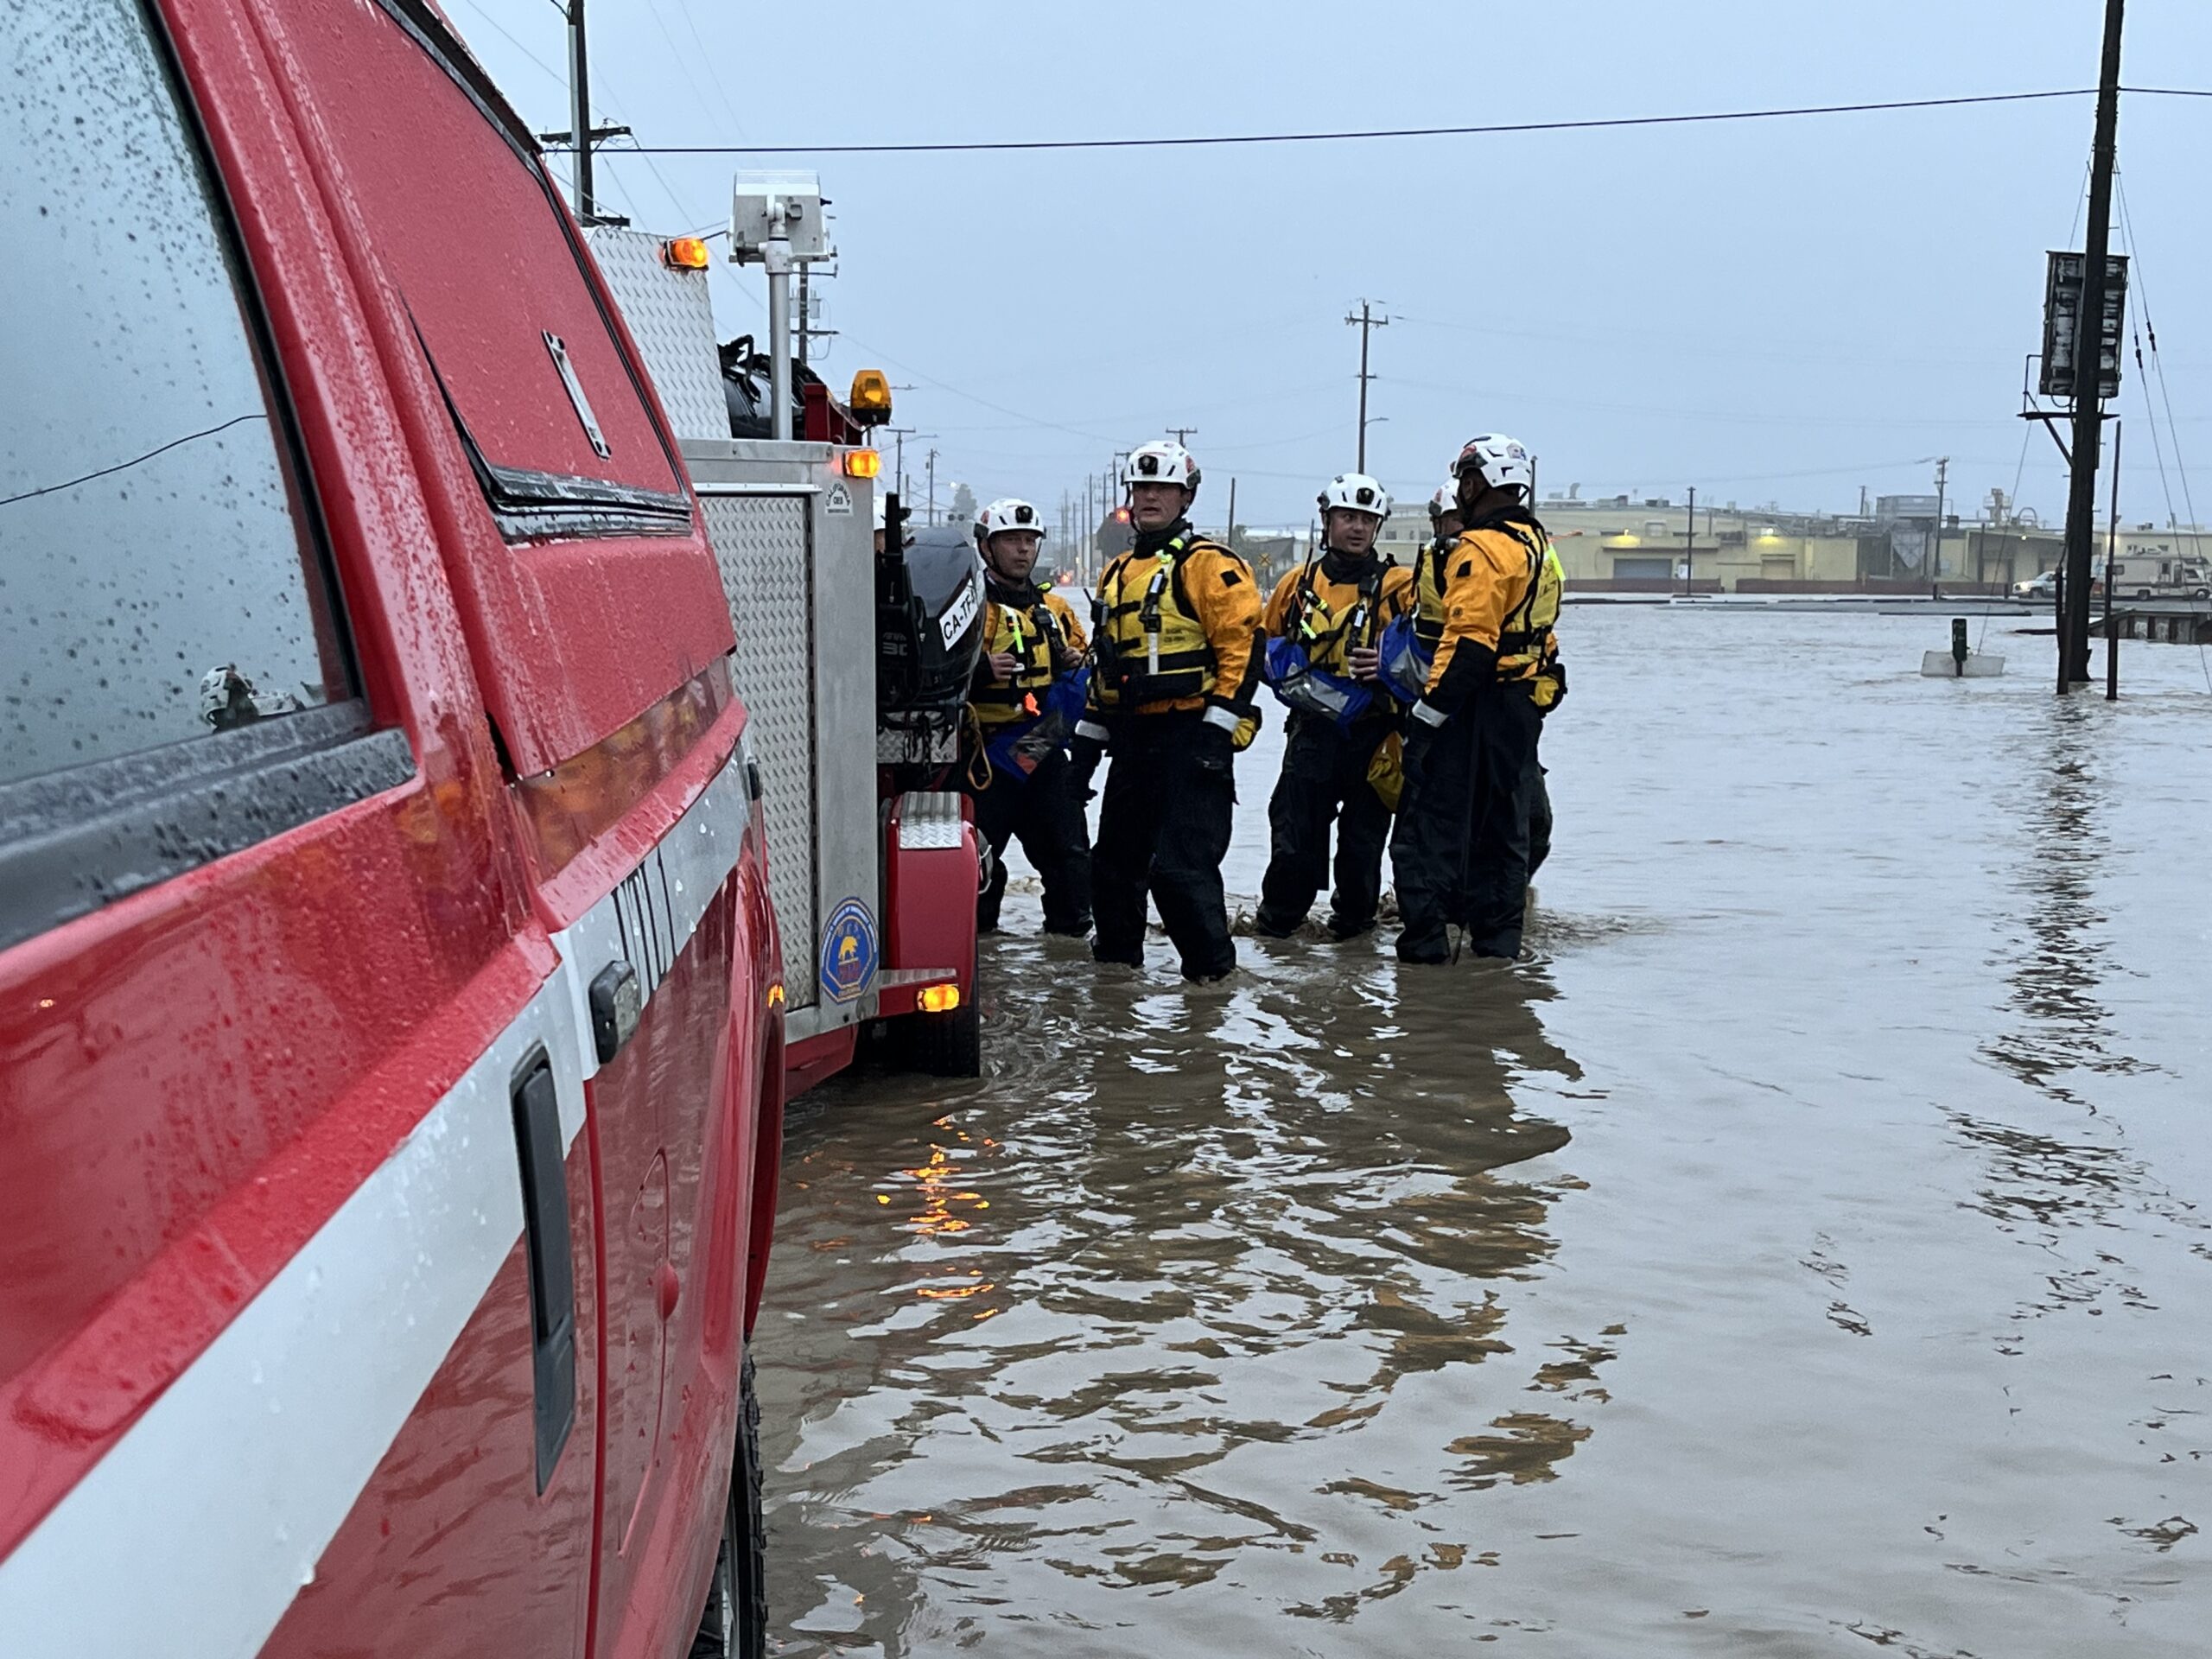 Cal OS unit responding to storm flooding